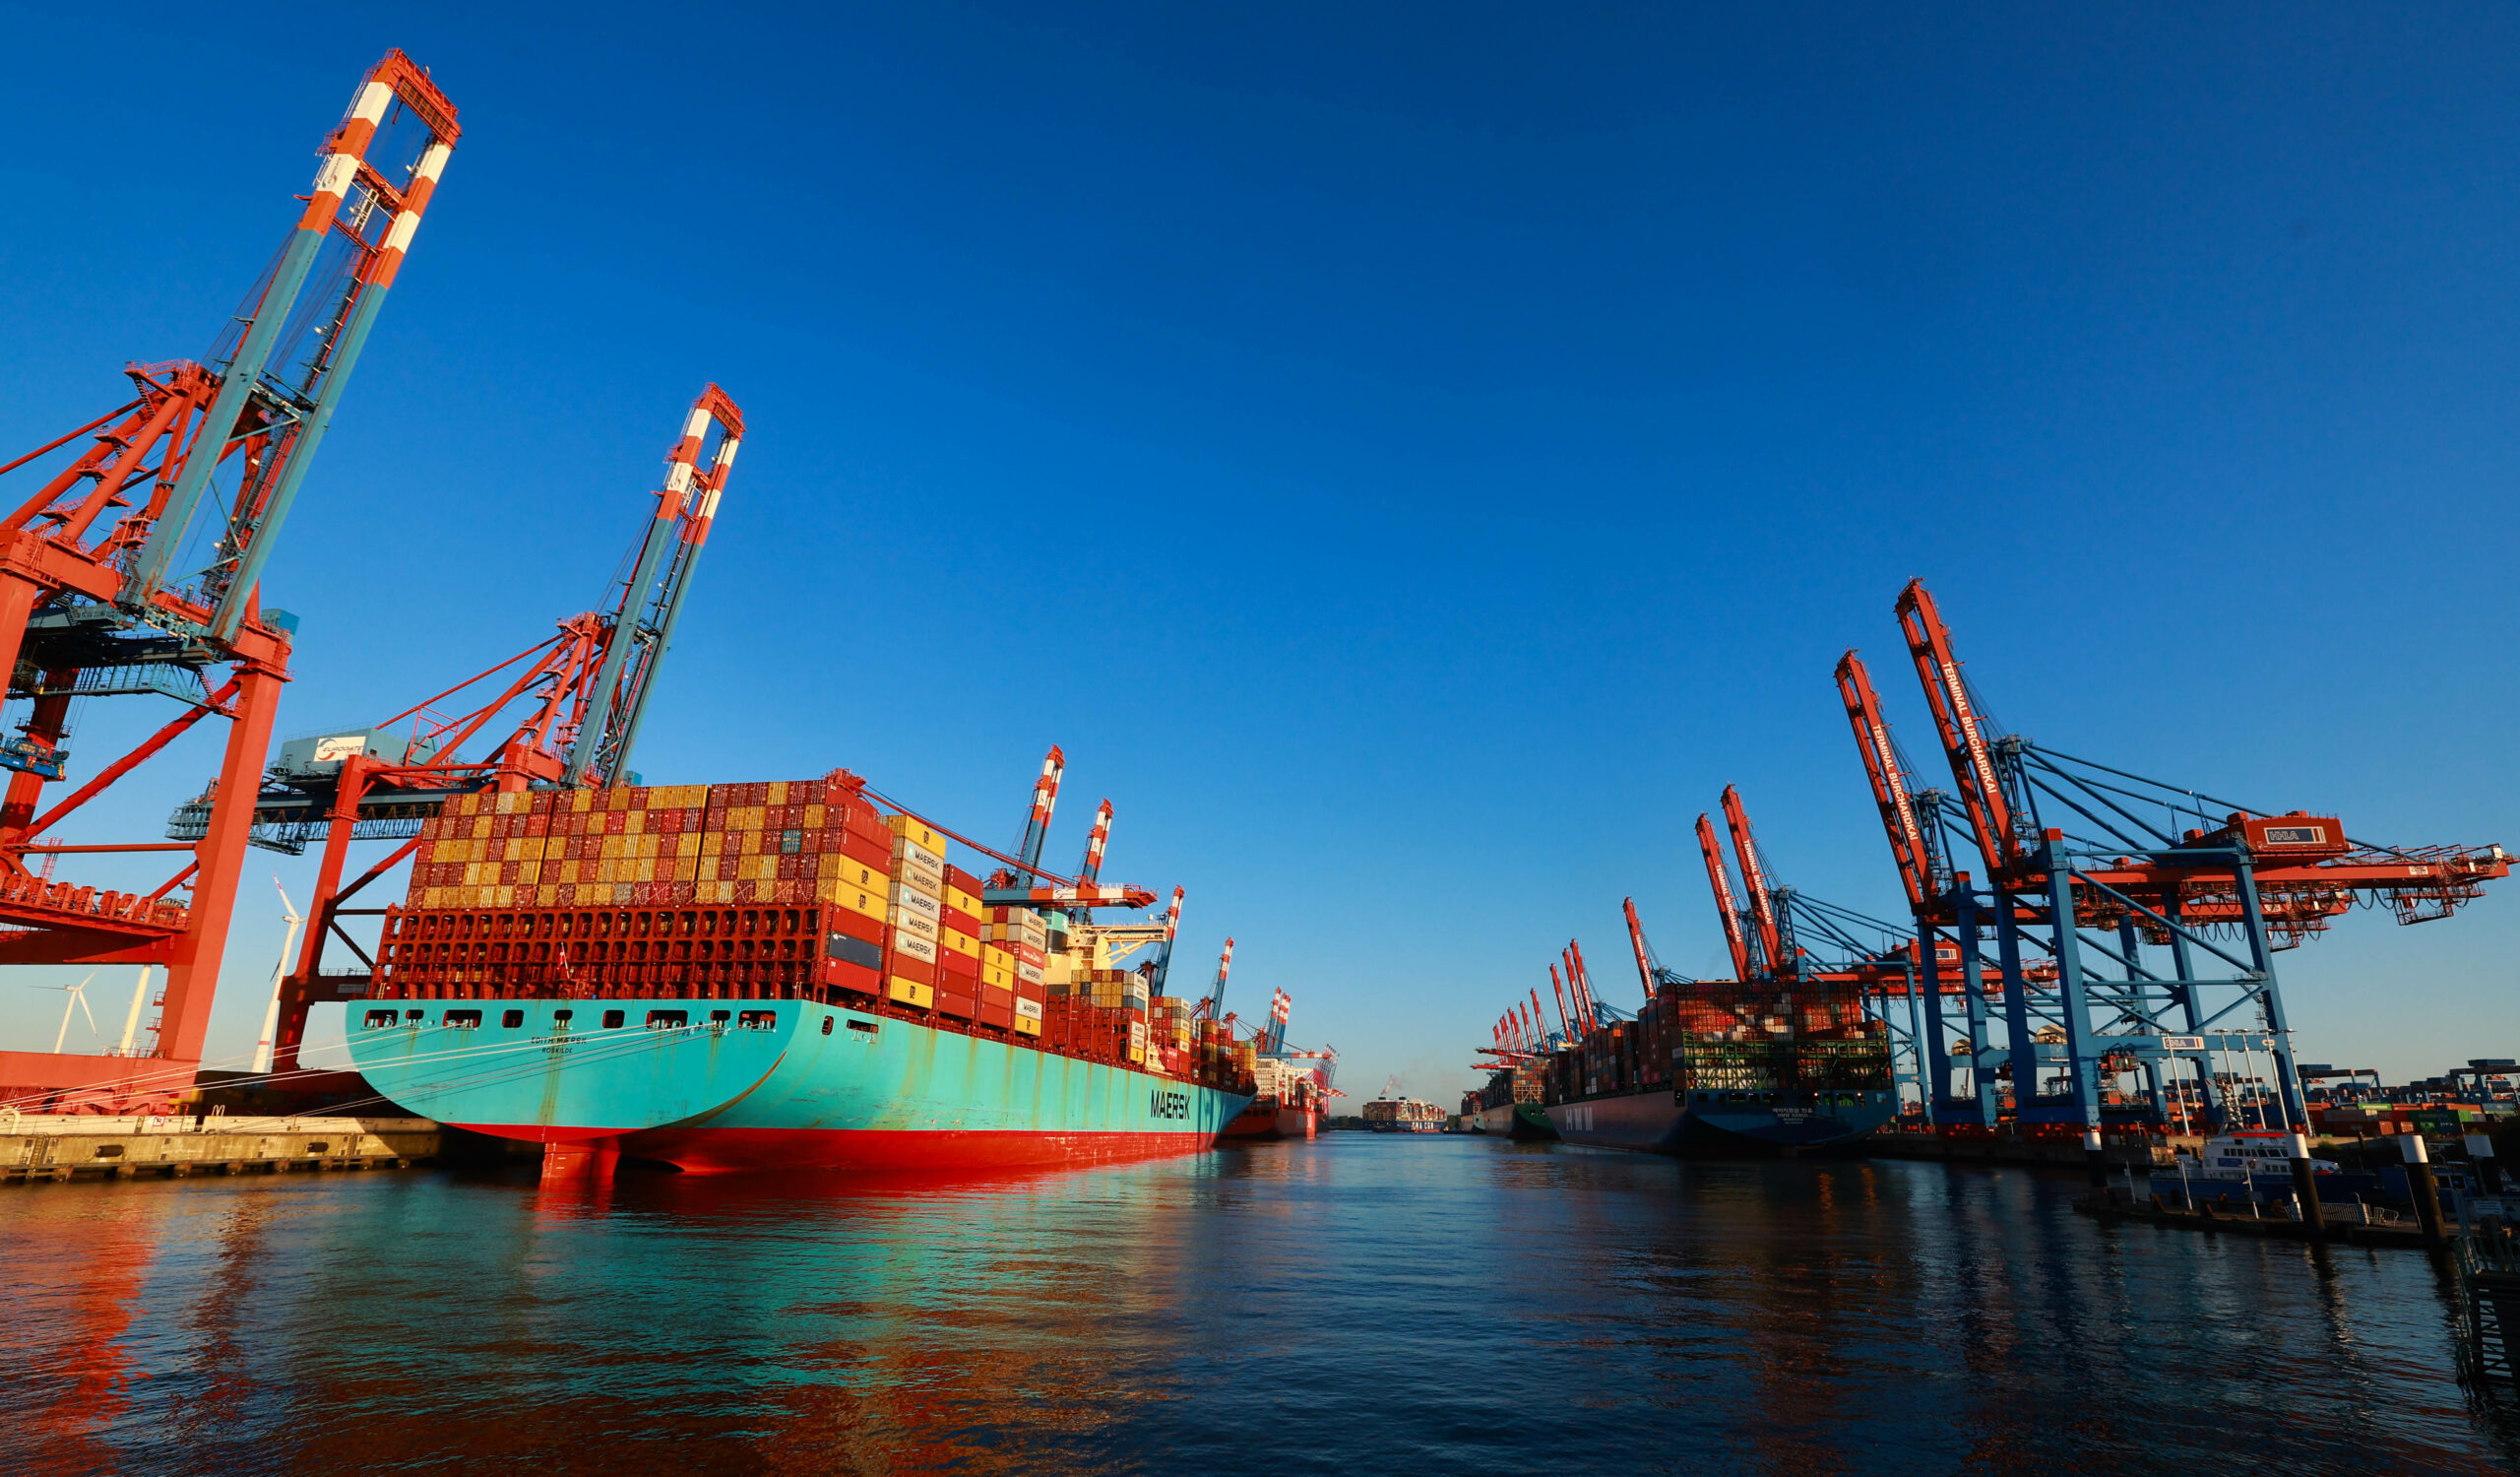 Containerschiffe liegen im Waltershofer Hafen am Container Terminal Burchardkai (CTB) der HHLA (Hamburger Hafen und Logistik AG).